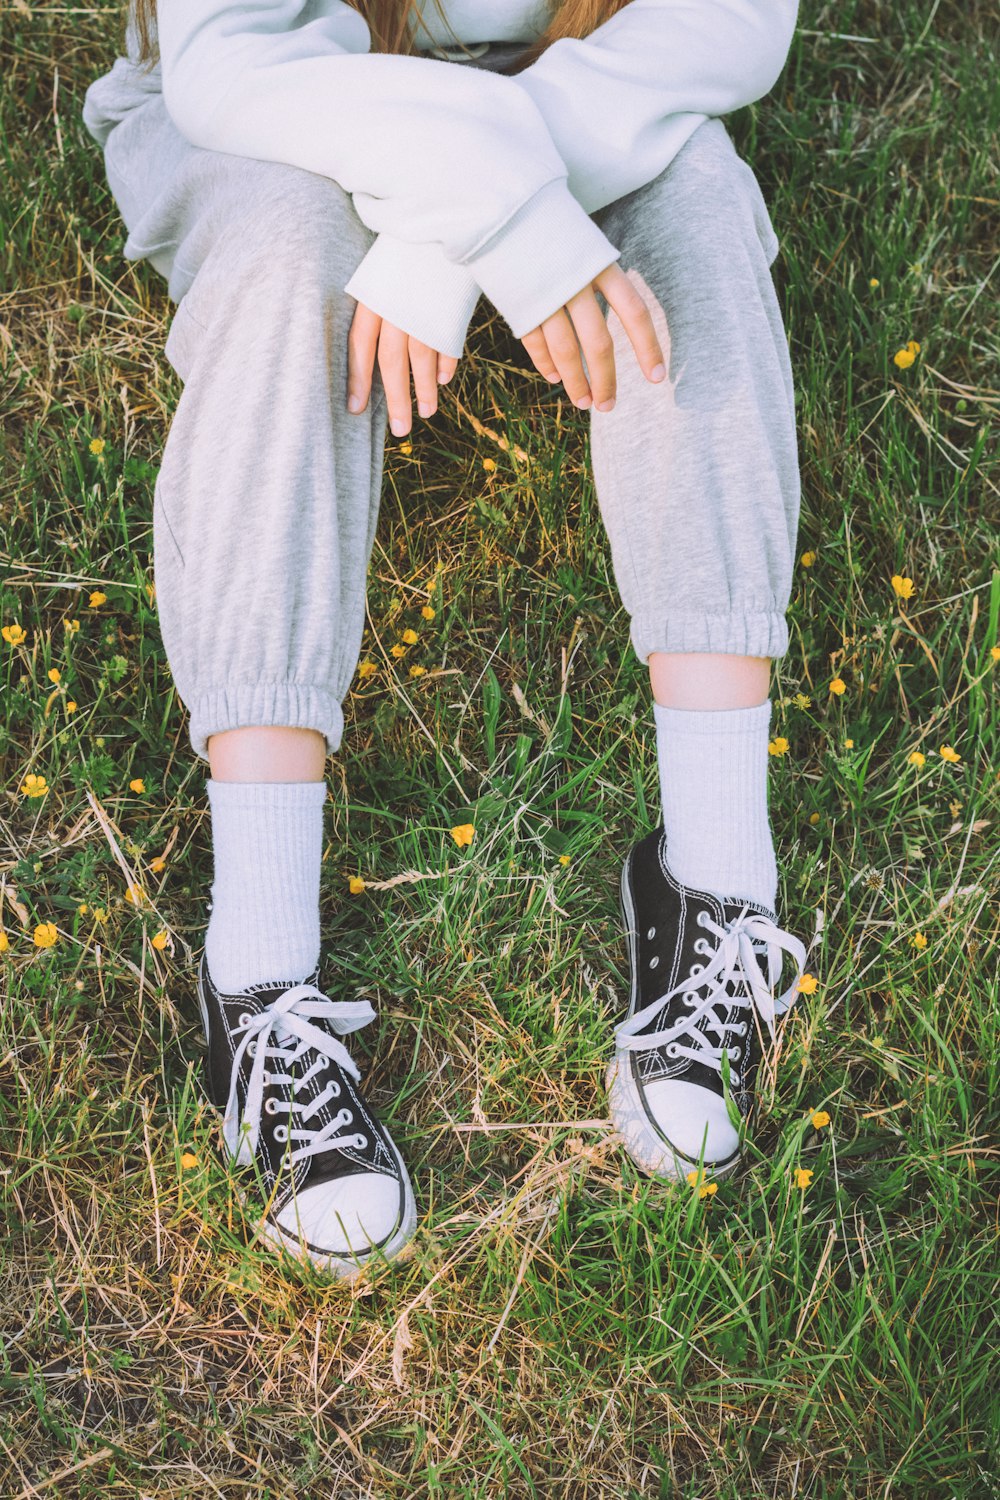 gambe e piedi di una persona in un'area erbosa